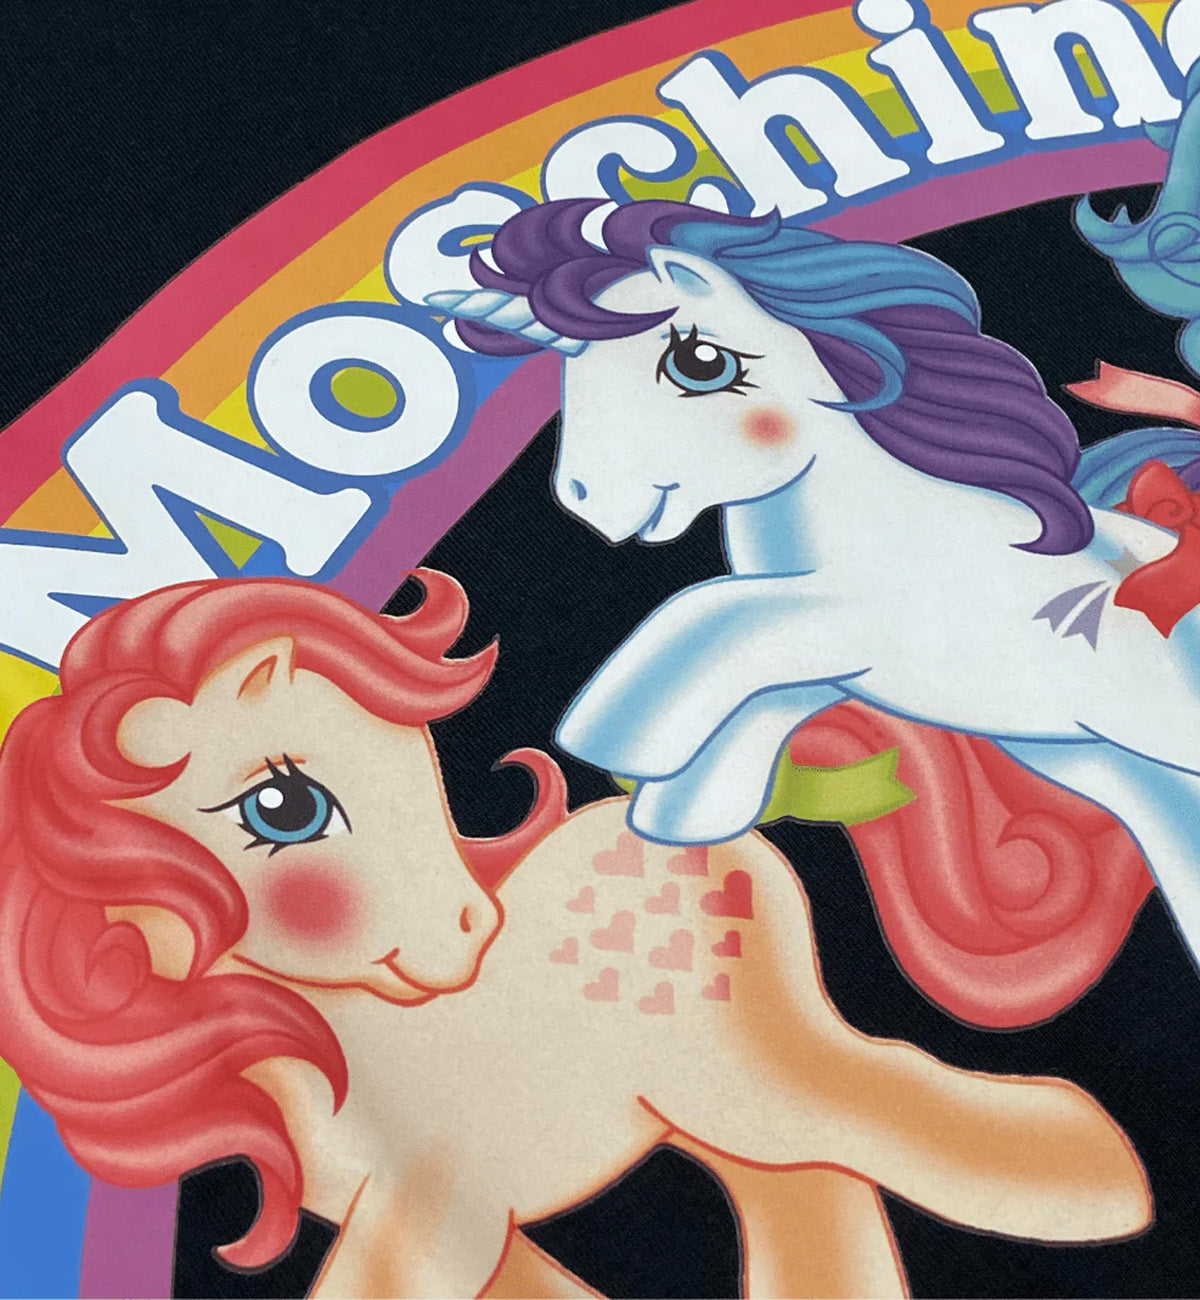 Moschino Rainbow Unicorn Printed T-Shirt (Black)